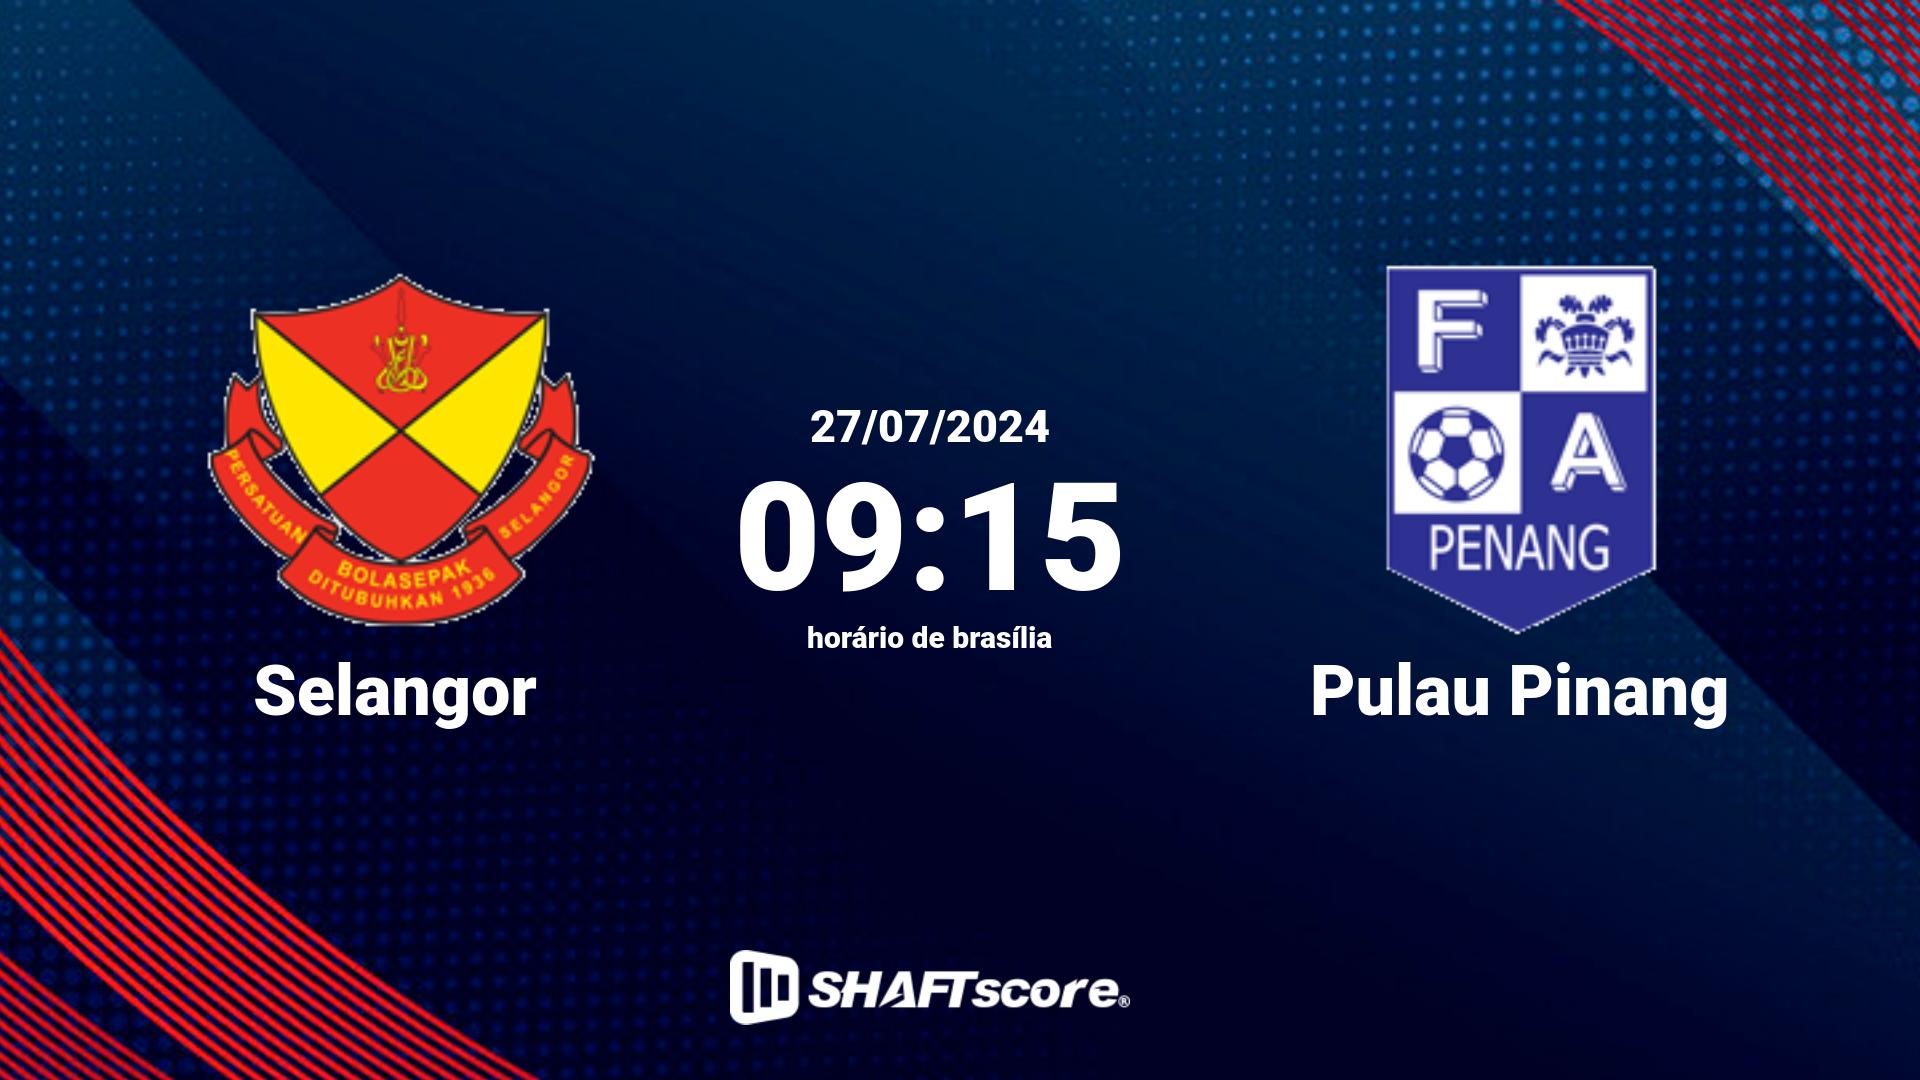 Estatísticas do jogo Selangor vs Pulau Pinang 27.07 09:15